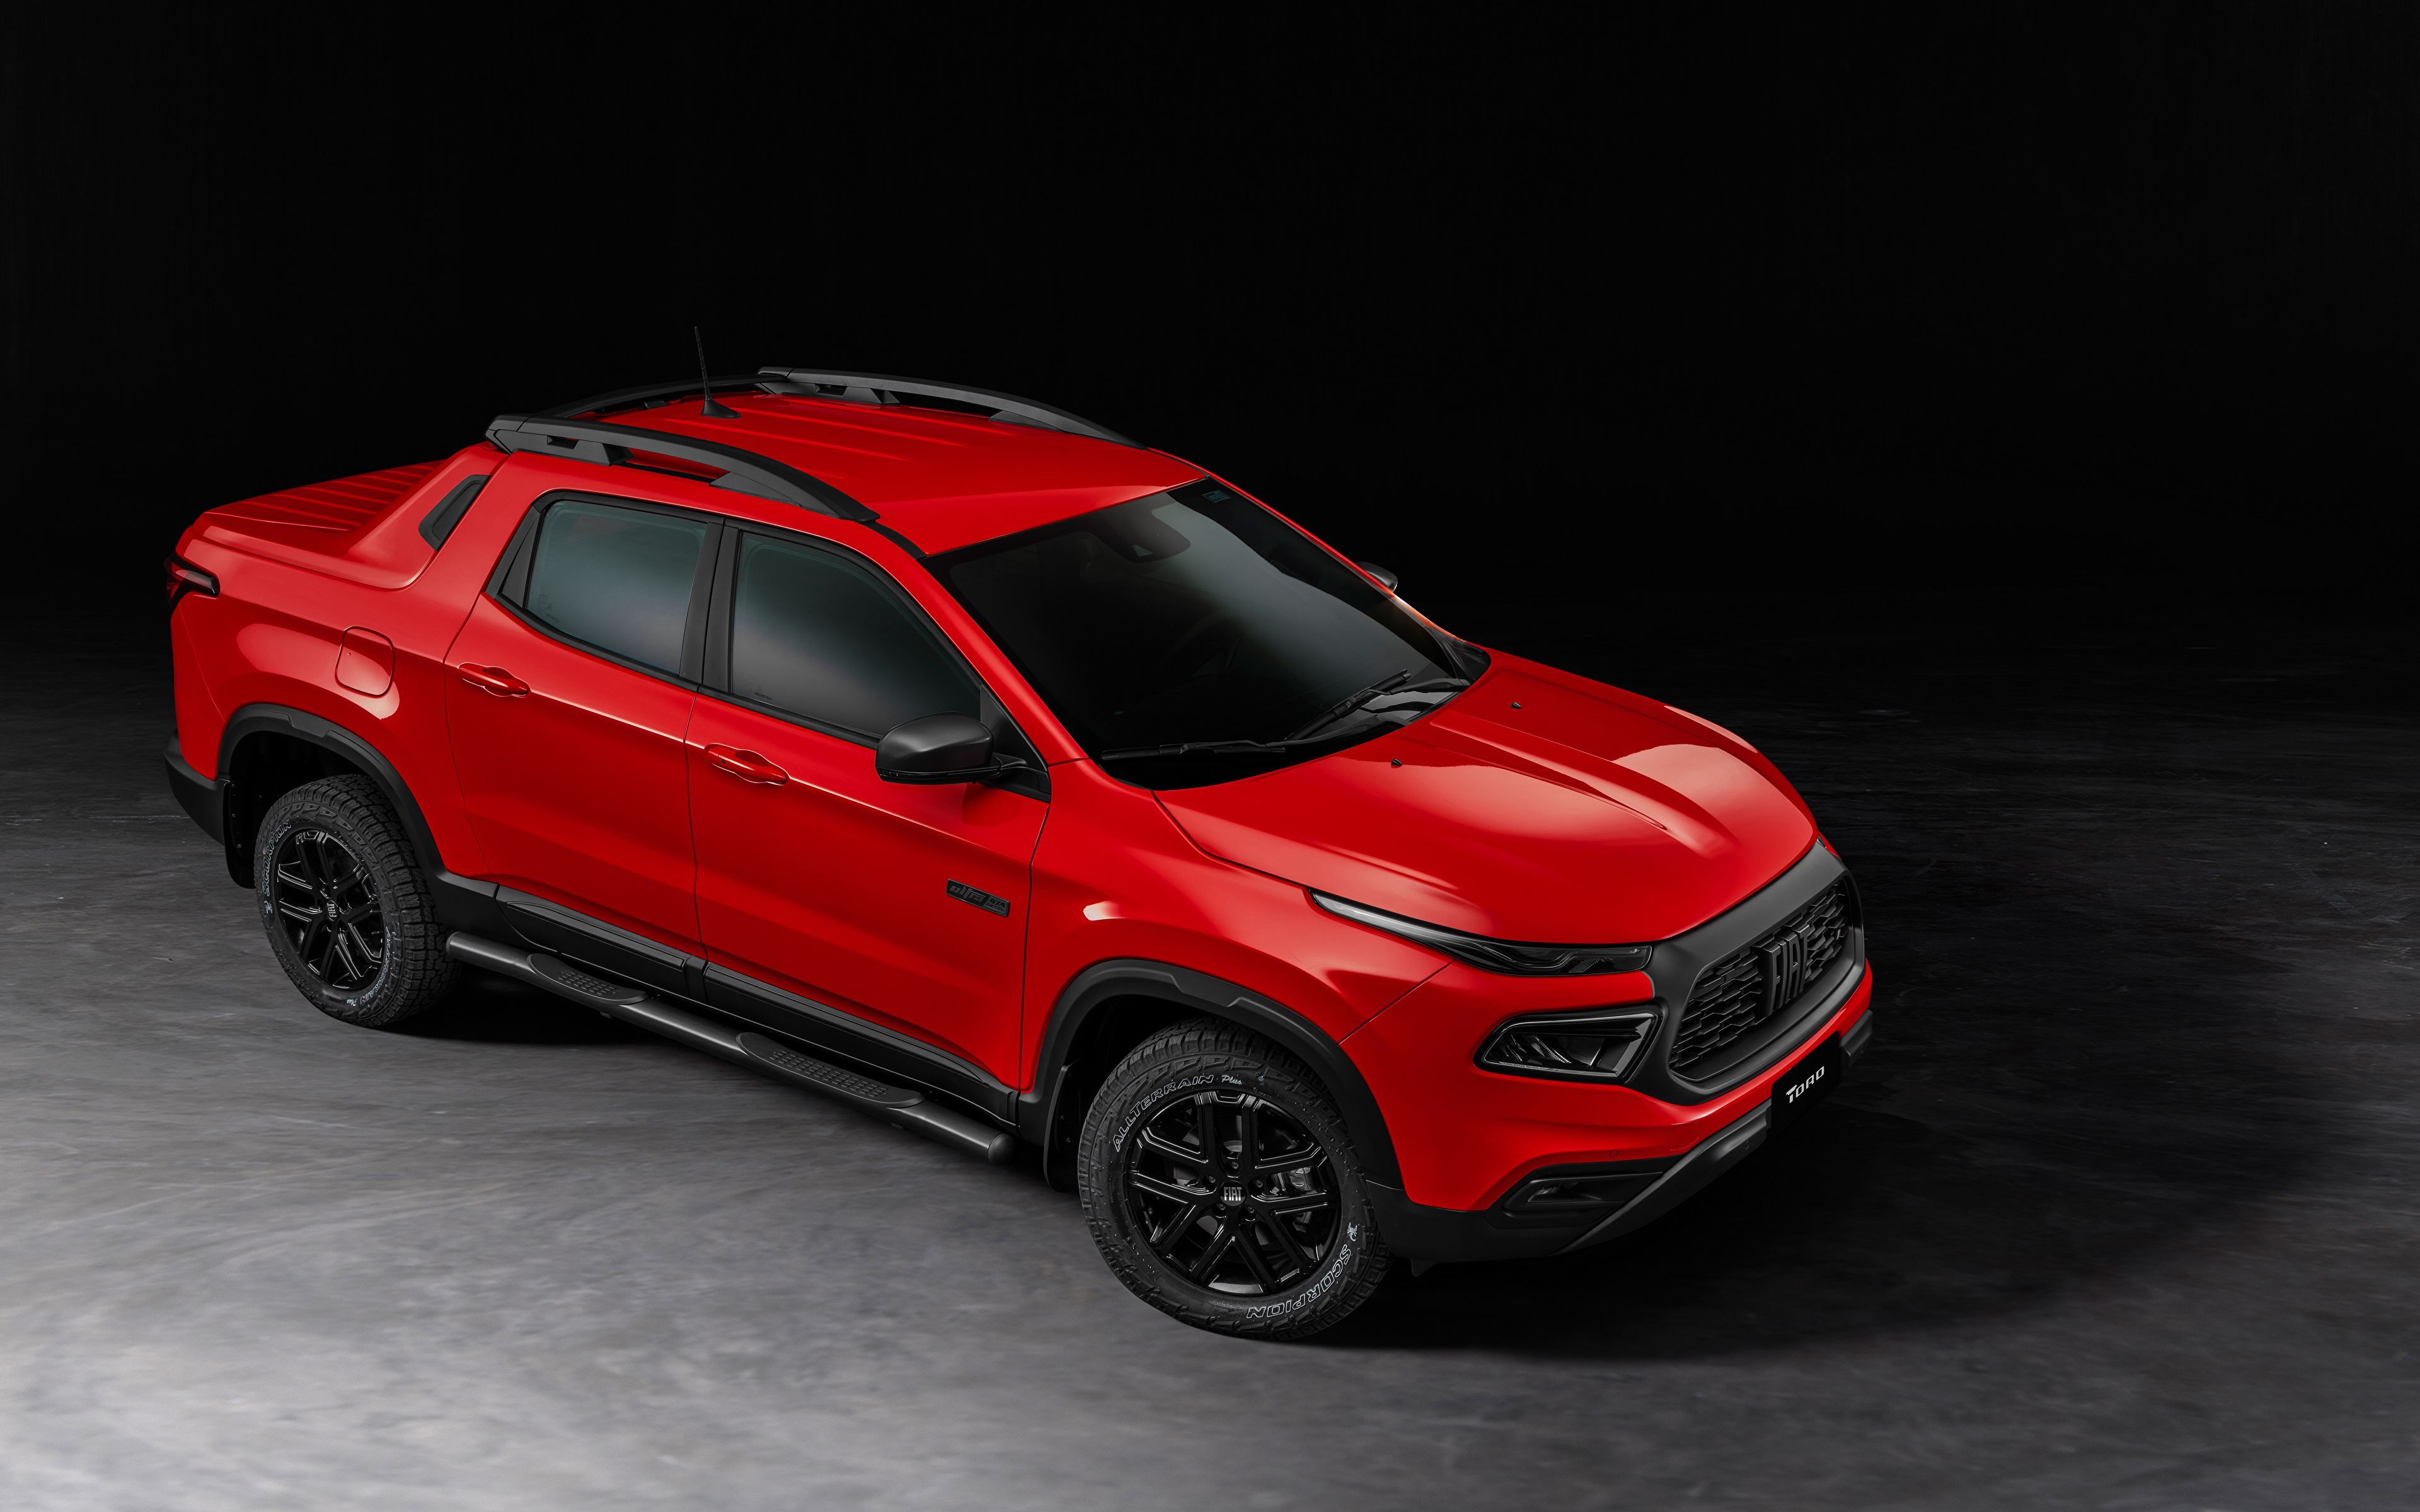 Bilde Fiat Toro Ultra (226), 2021 Pickup Rød Biler Metallisk 3840x2400 bil automobil